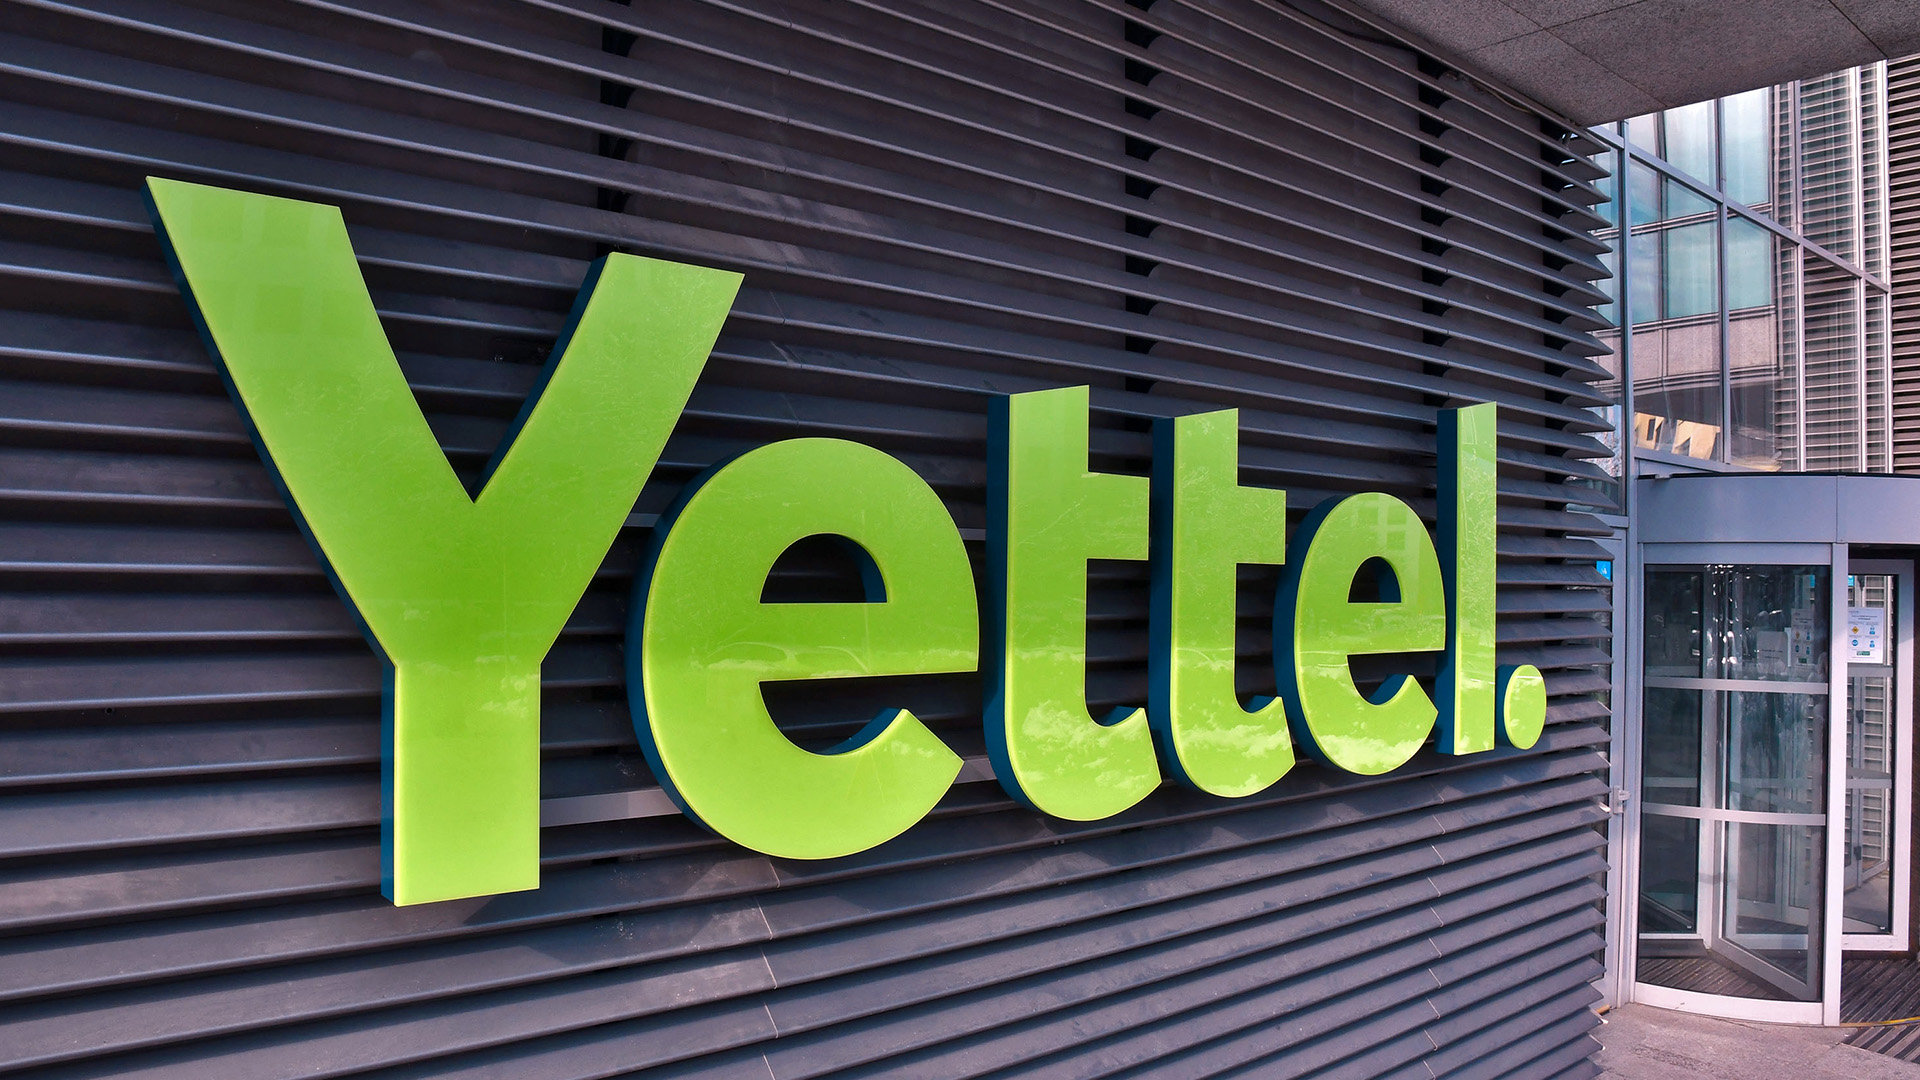 Yettel предлага специални комбинации от лаптопи интернет план и Microsoft